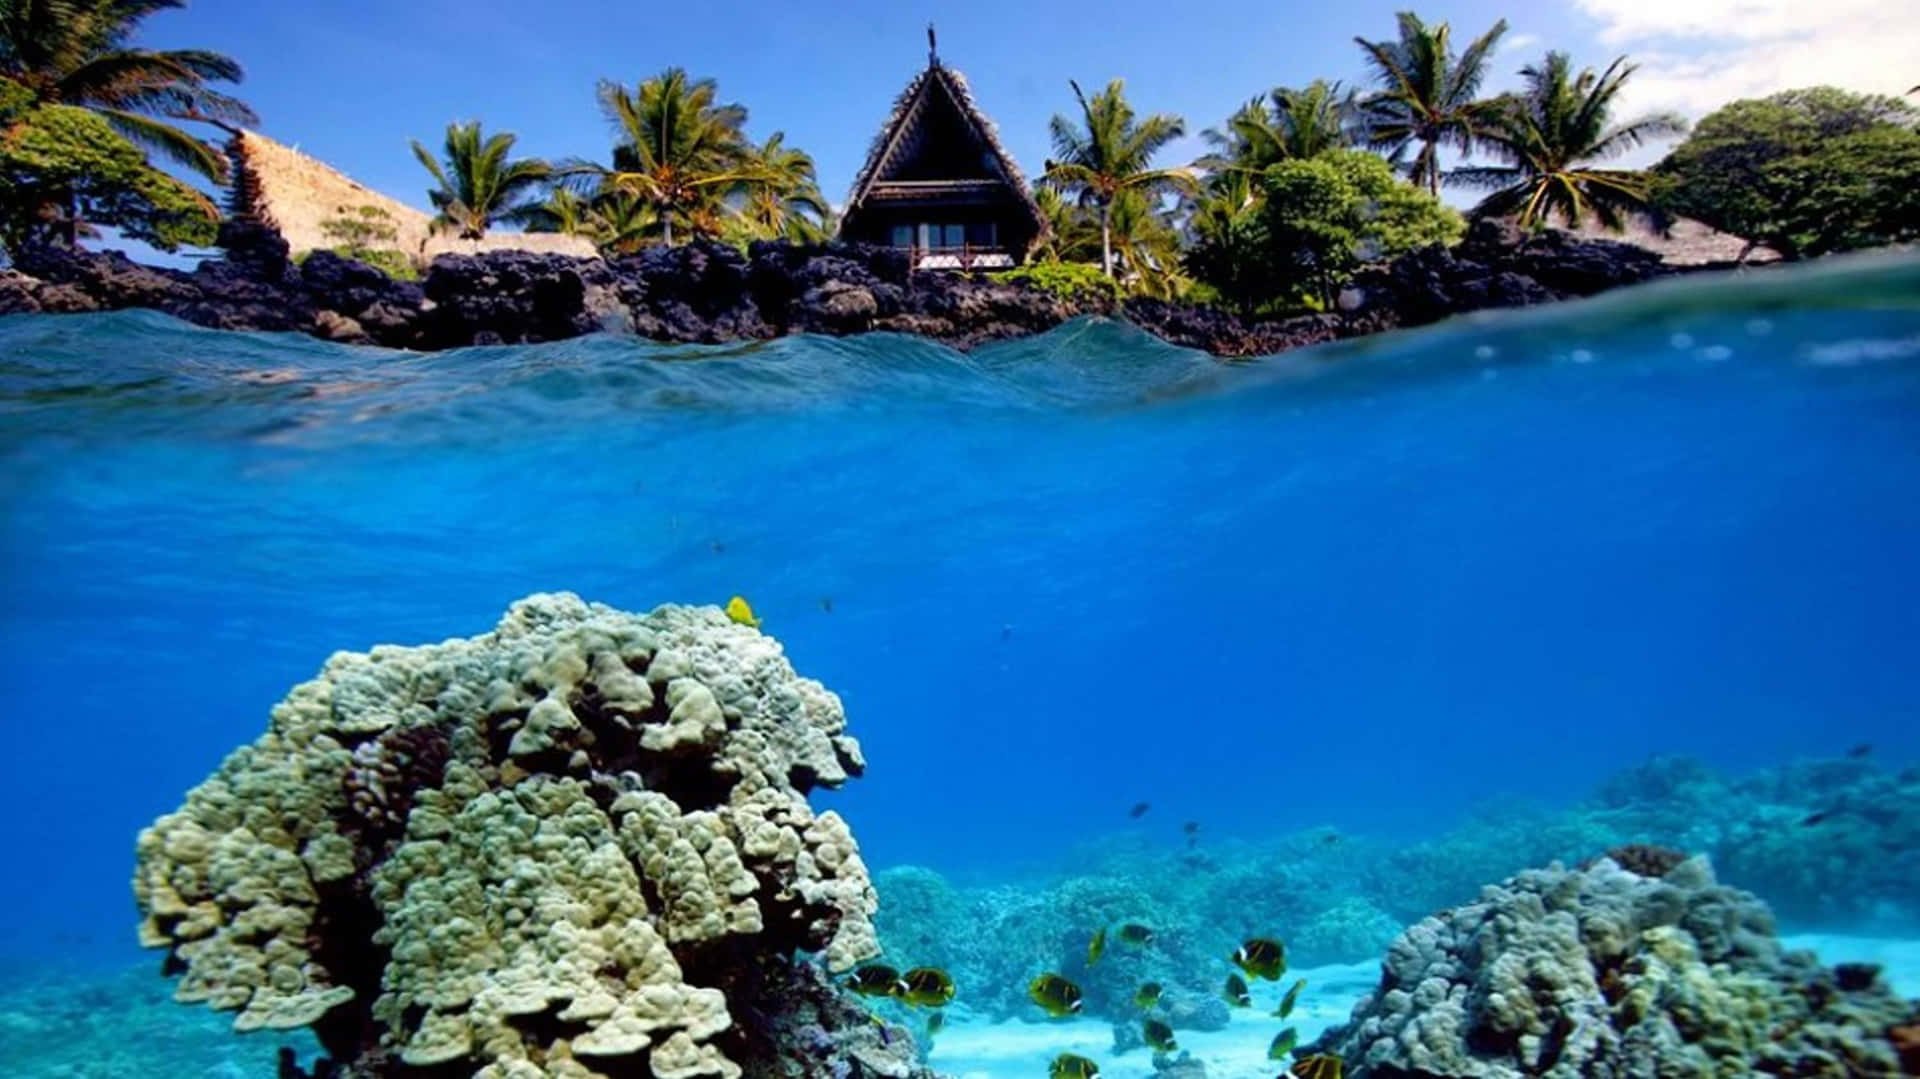 Et klart og farverigt koralrev oase